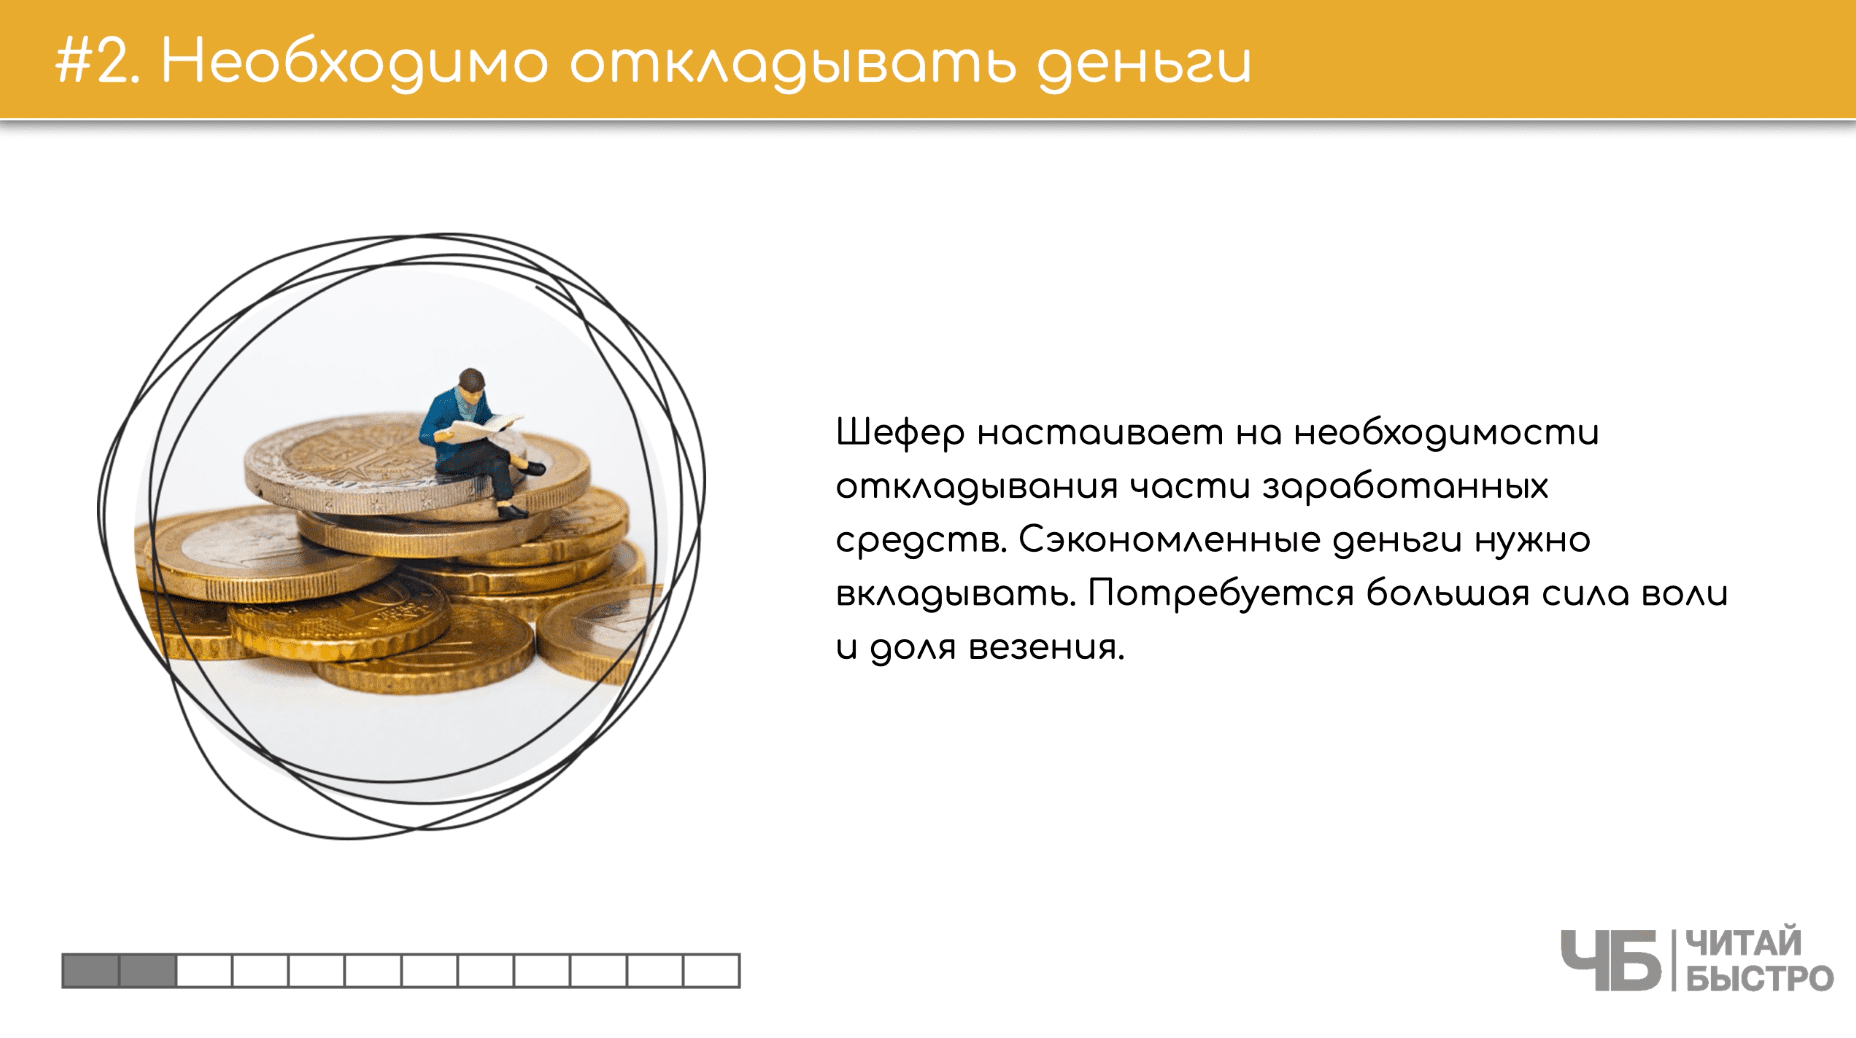 На этом слайде изображен тезис о необходимости откладывать деньги и иллюстрация мужчины, который сидит на монетах.